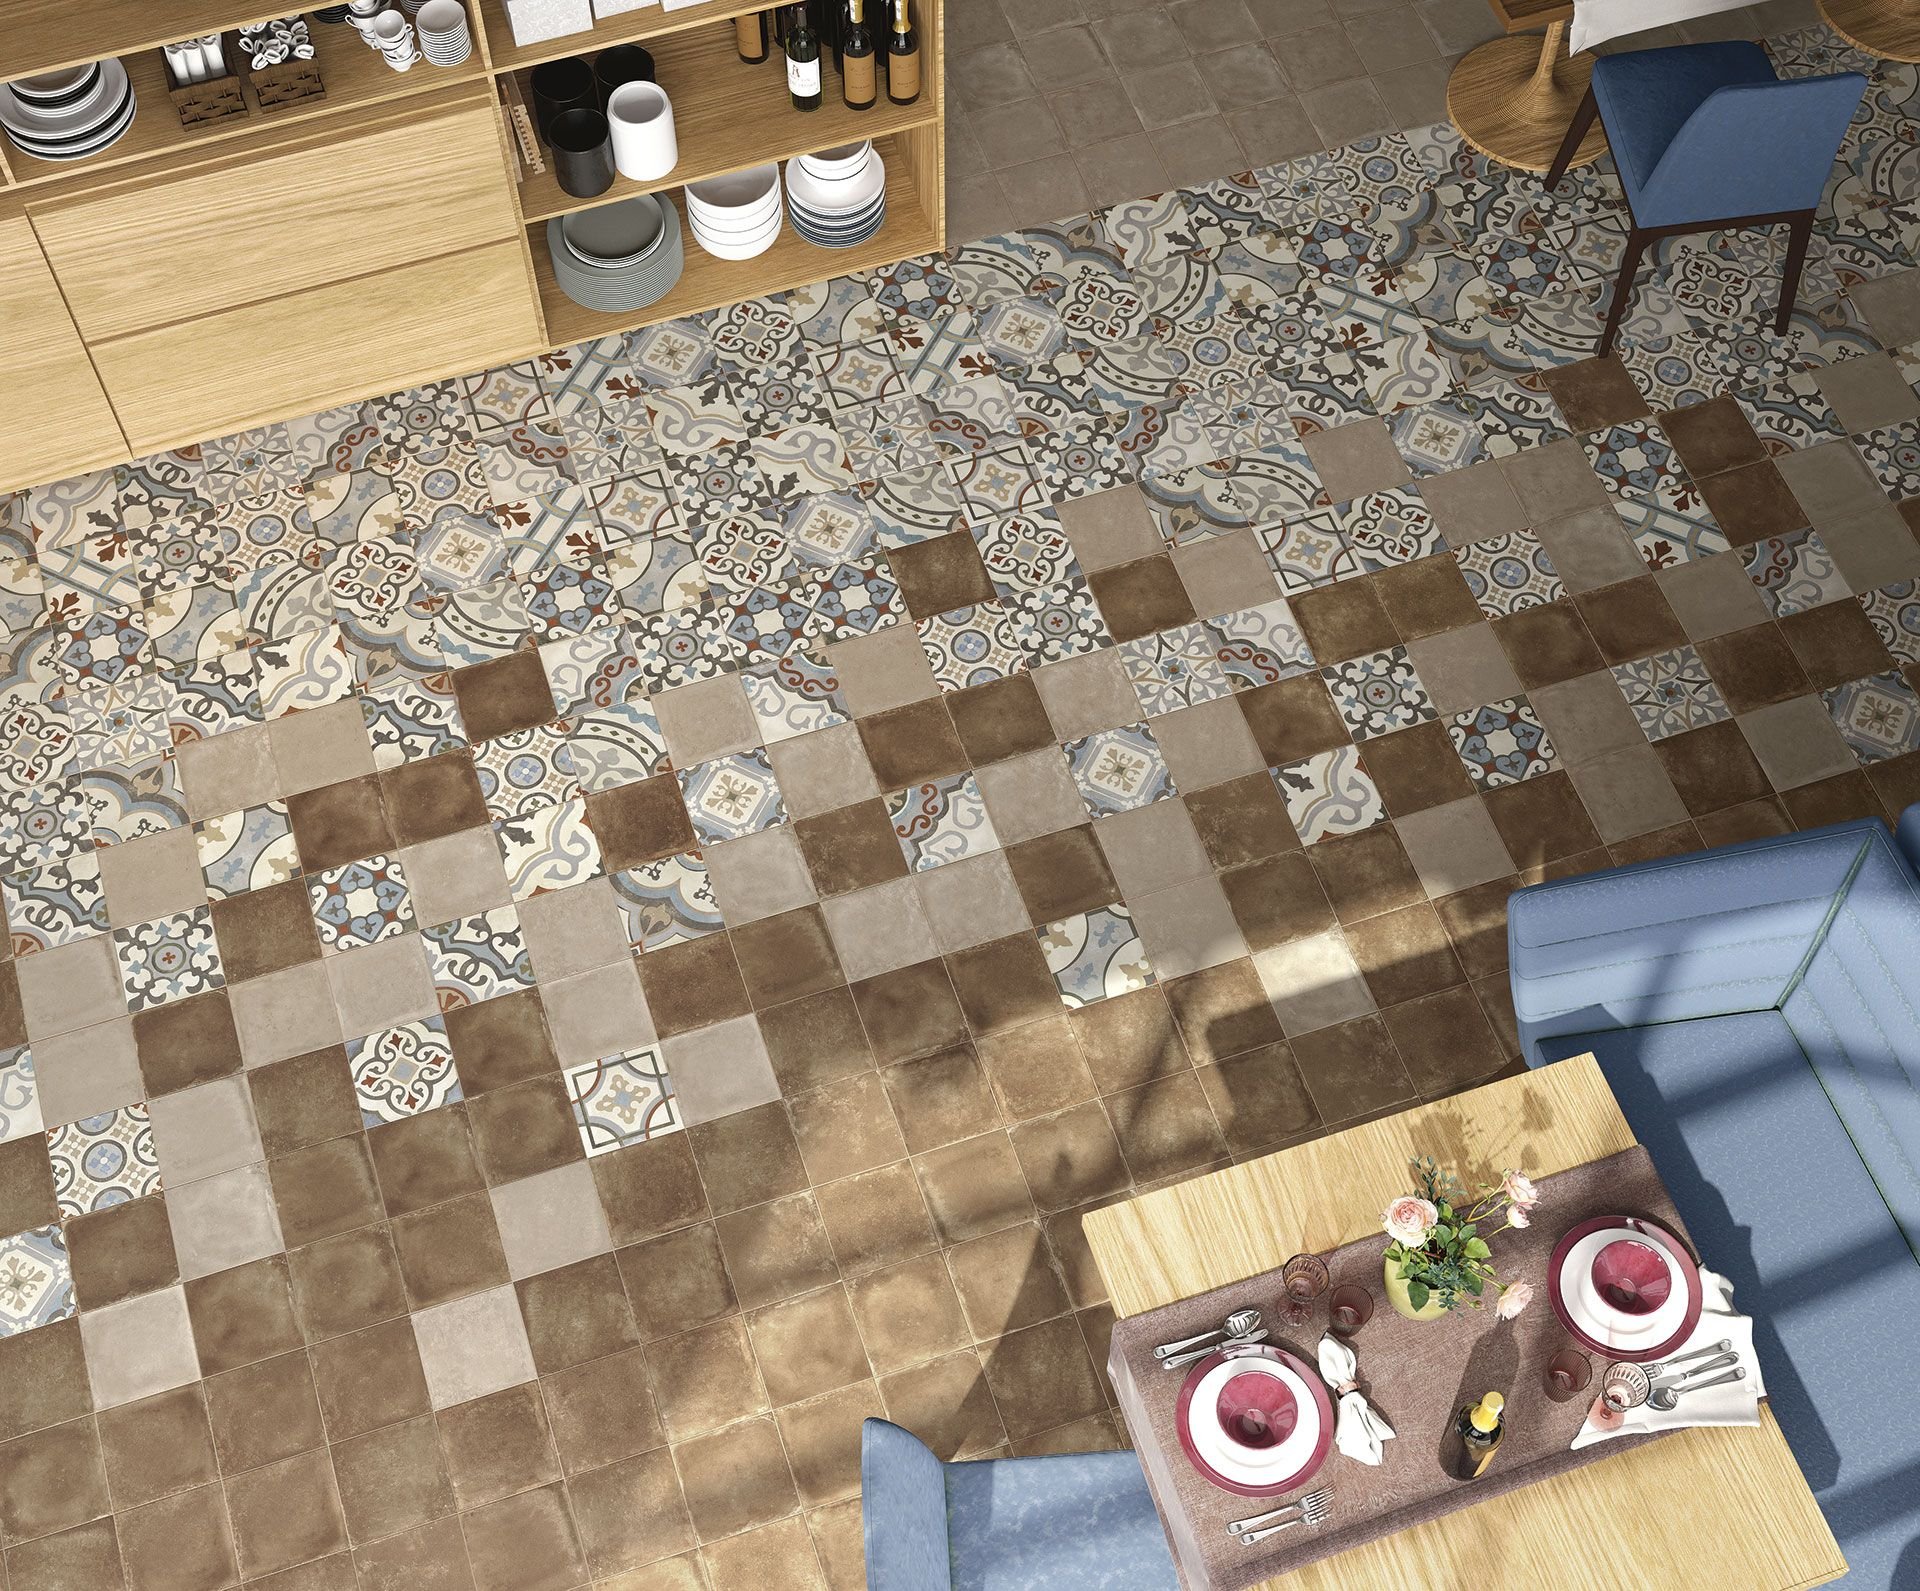 #Koupelna #Kuchyně #Obytné prostory #Patchwork #Retro #Rustikální styl #Malý formát #Matná dlažba #1000 - 1500 Kč/m2 #Elios Ceramica #D-esign Evo